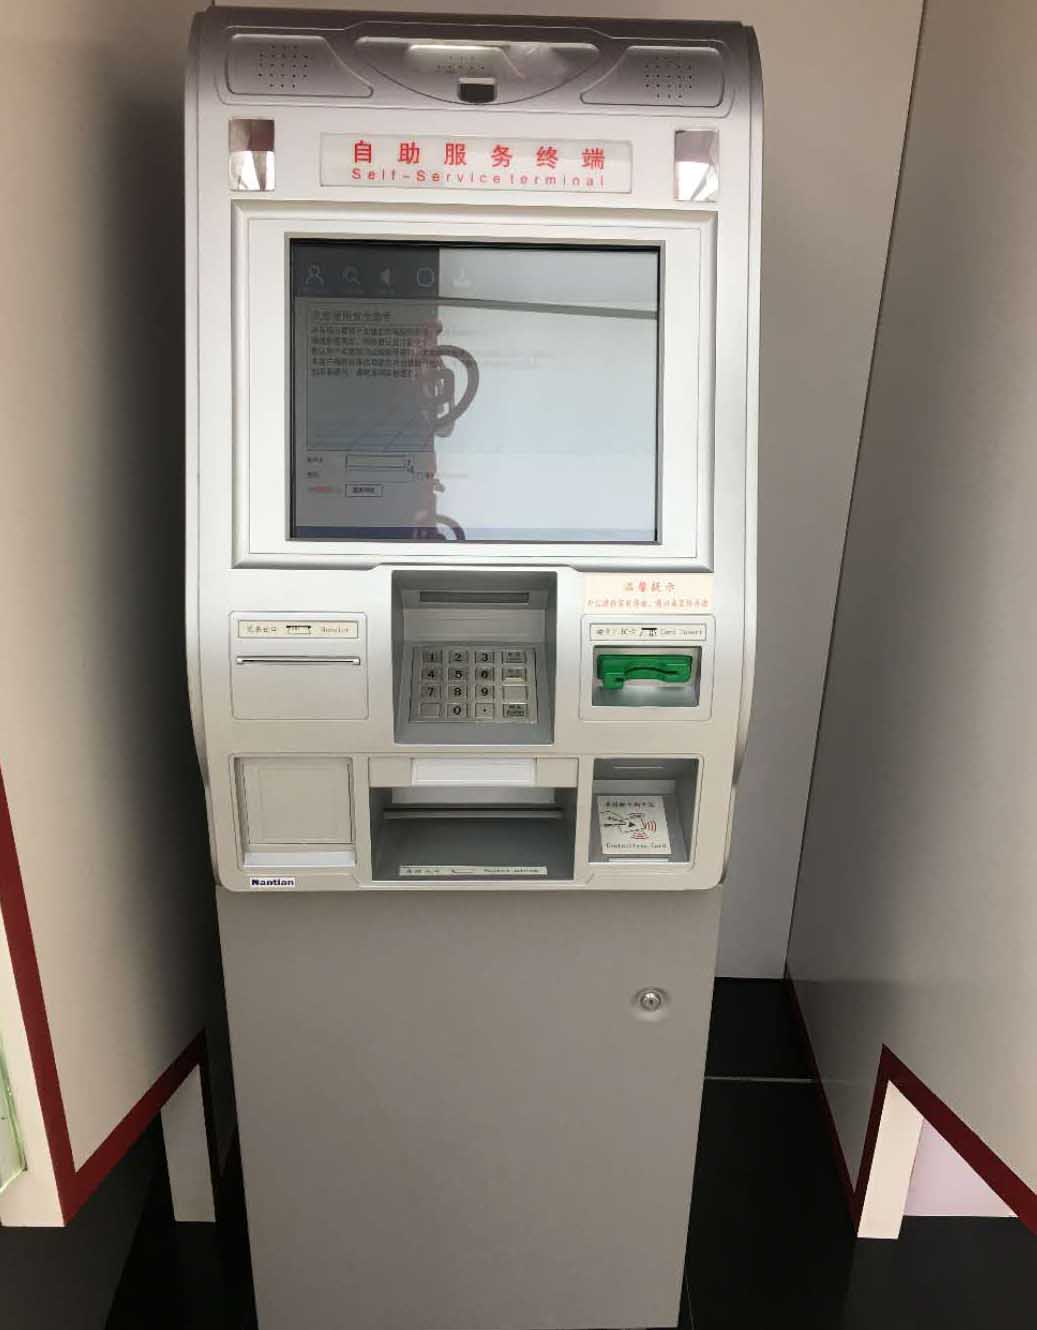 触摸屏玻093娱乐下载中国有限公司及条纹玻093娱乐下载中国有限公司在银行ATM机上的应用